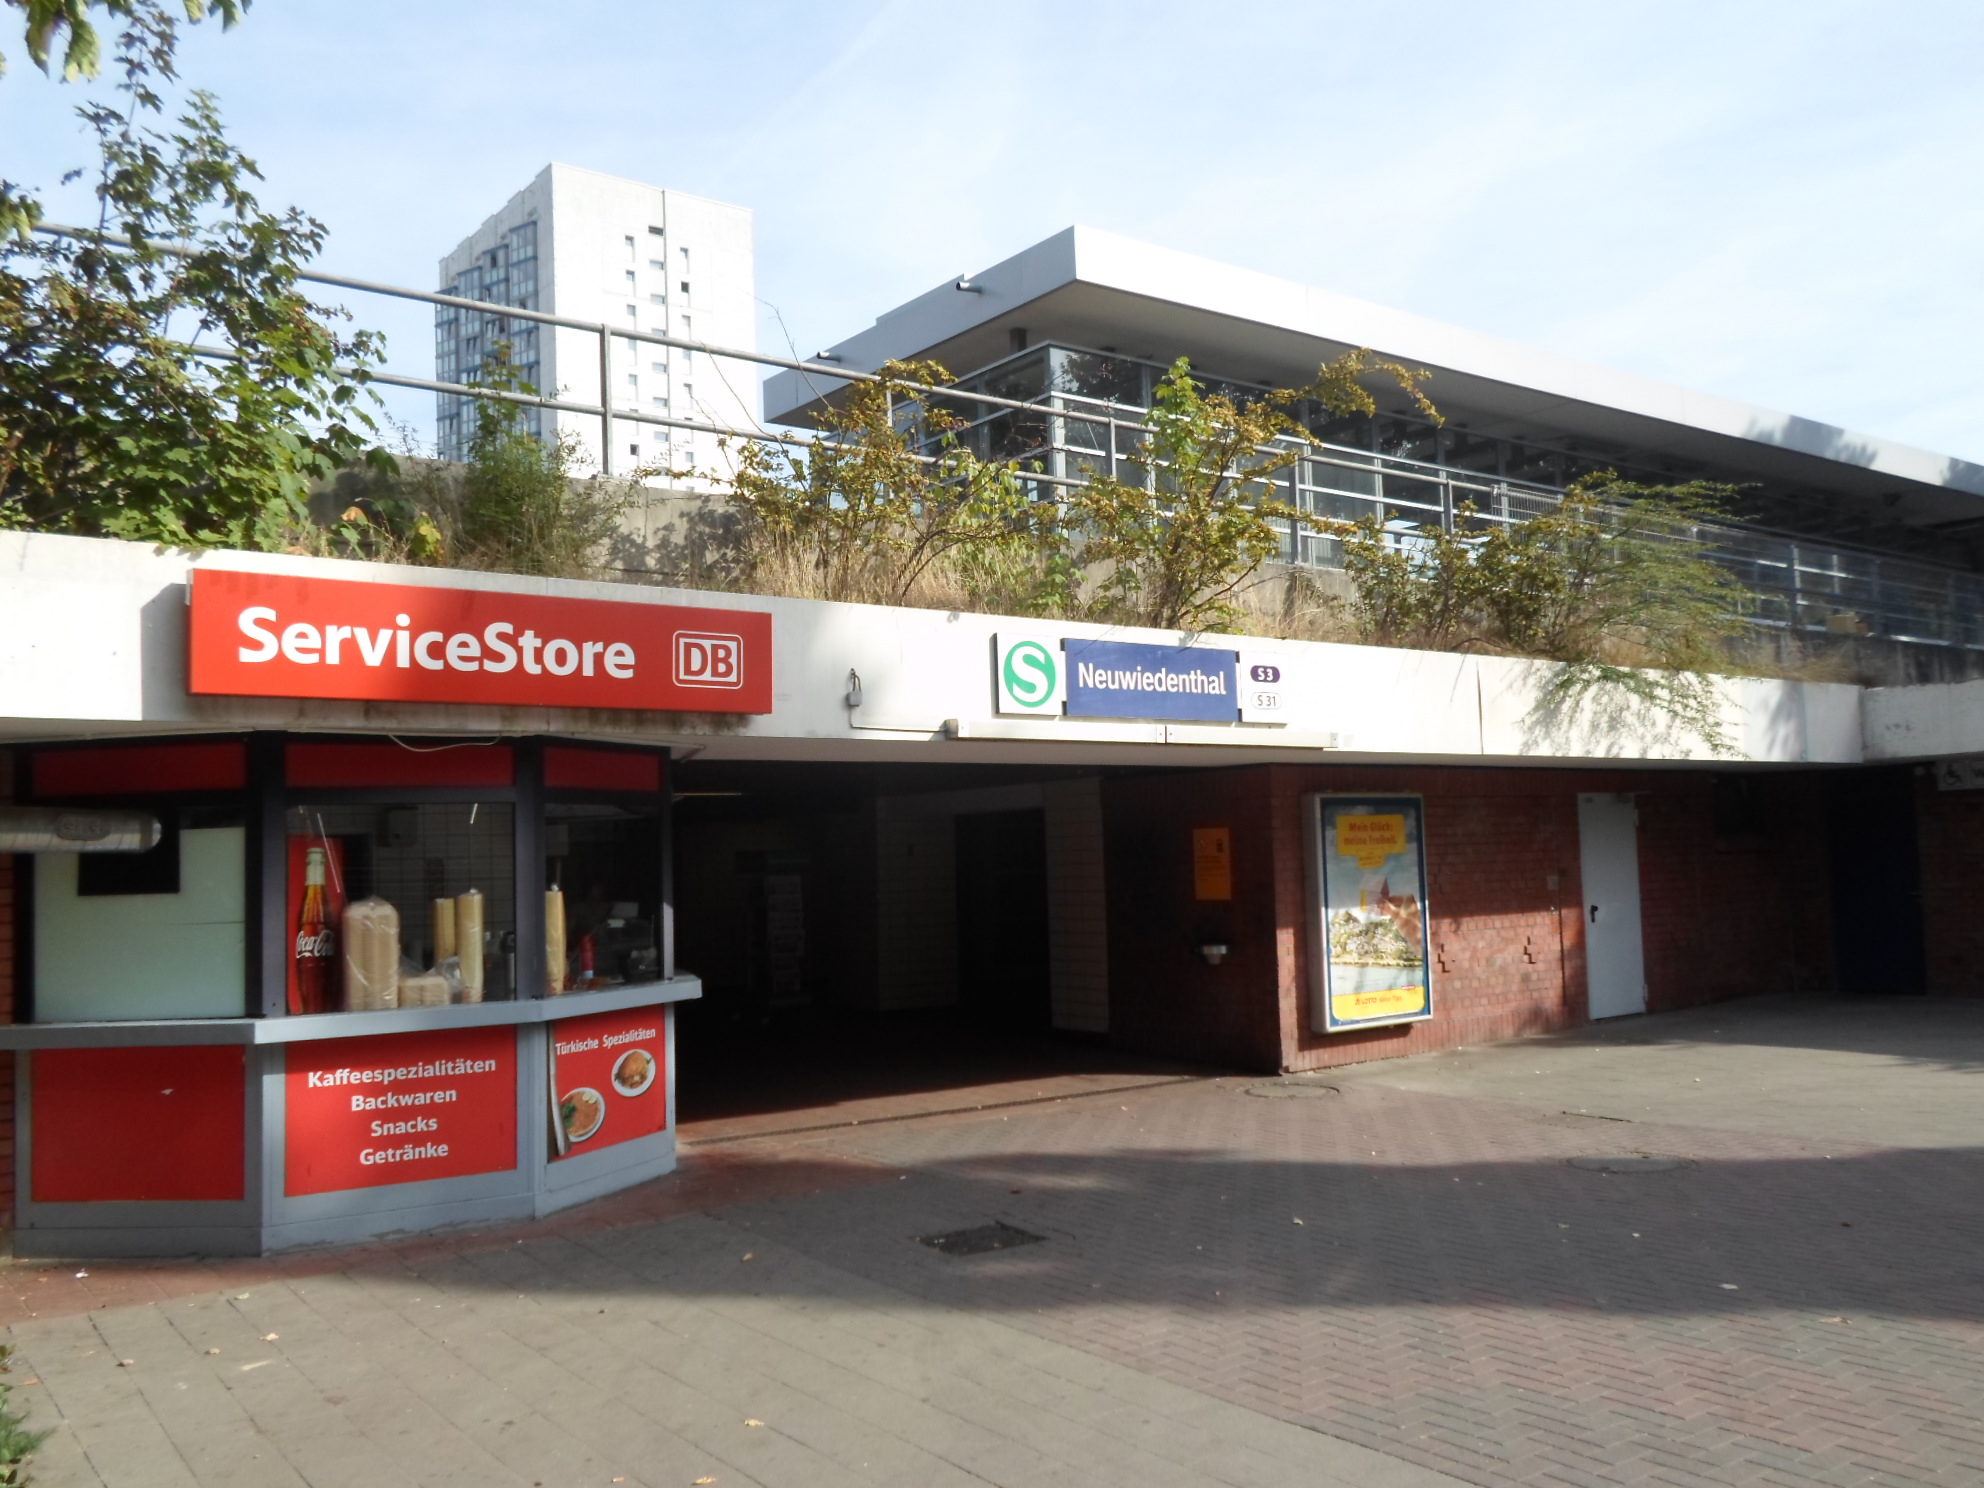 Bild 1 ServiceStore DB - S-Bahnhof Hamburg Neuwiedenthal in Hamburg